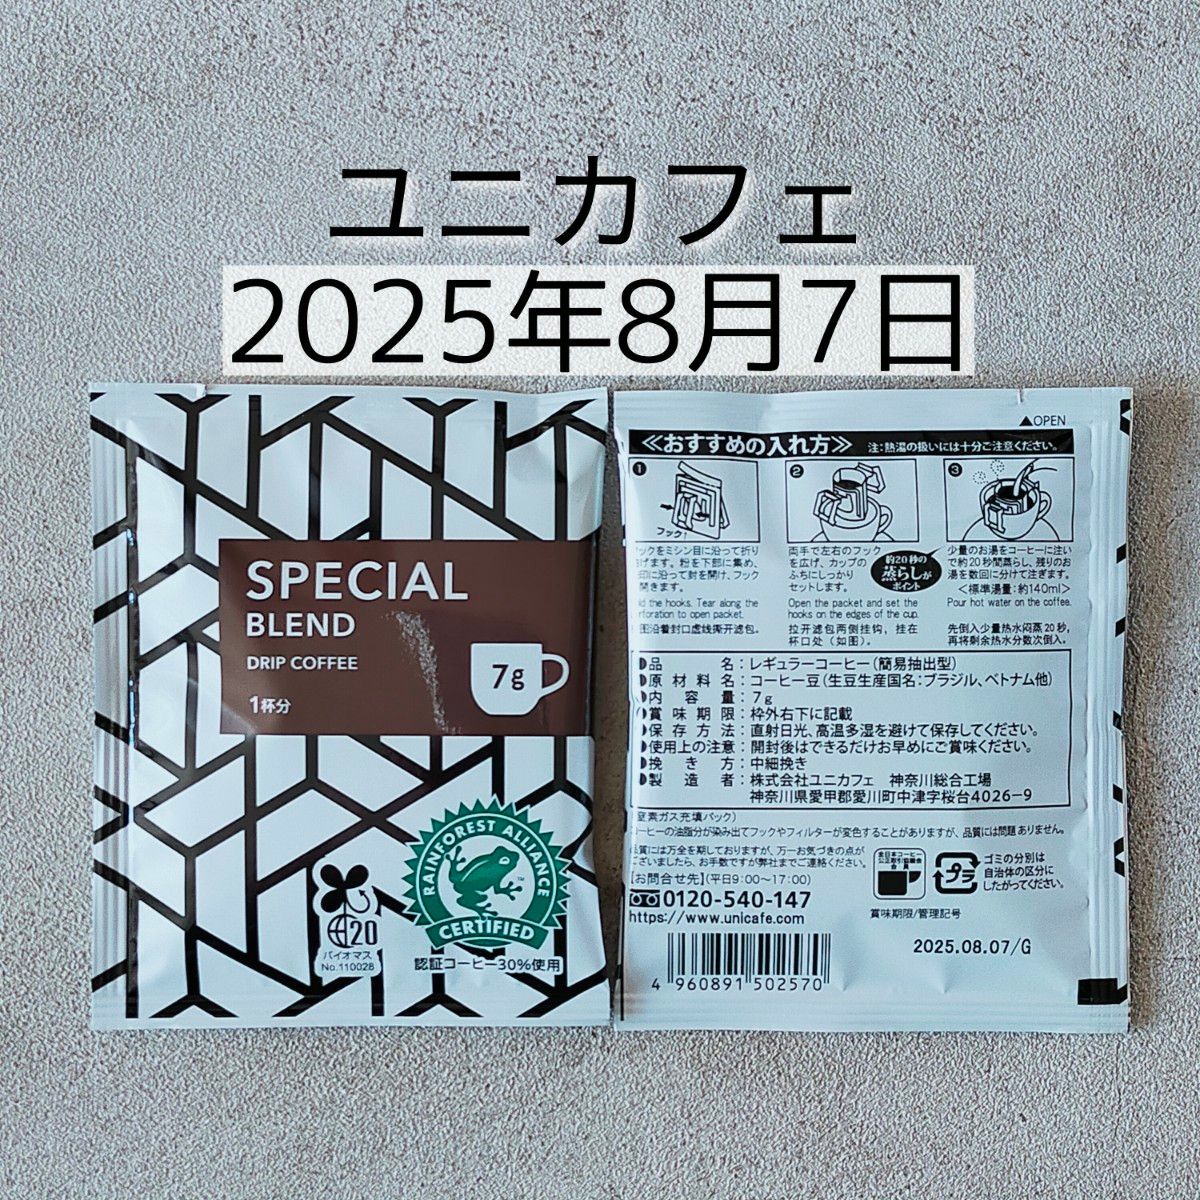 ユニカフェ スペシャル・マイルド・モカ 各10袋 合計30袋 オリジナルドリップコーヒー